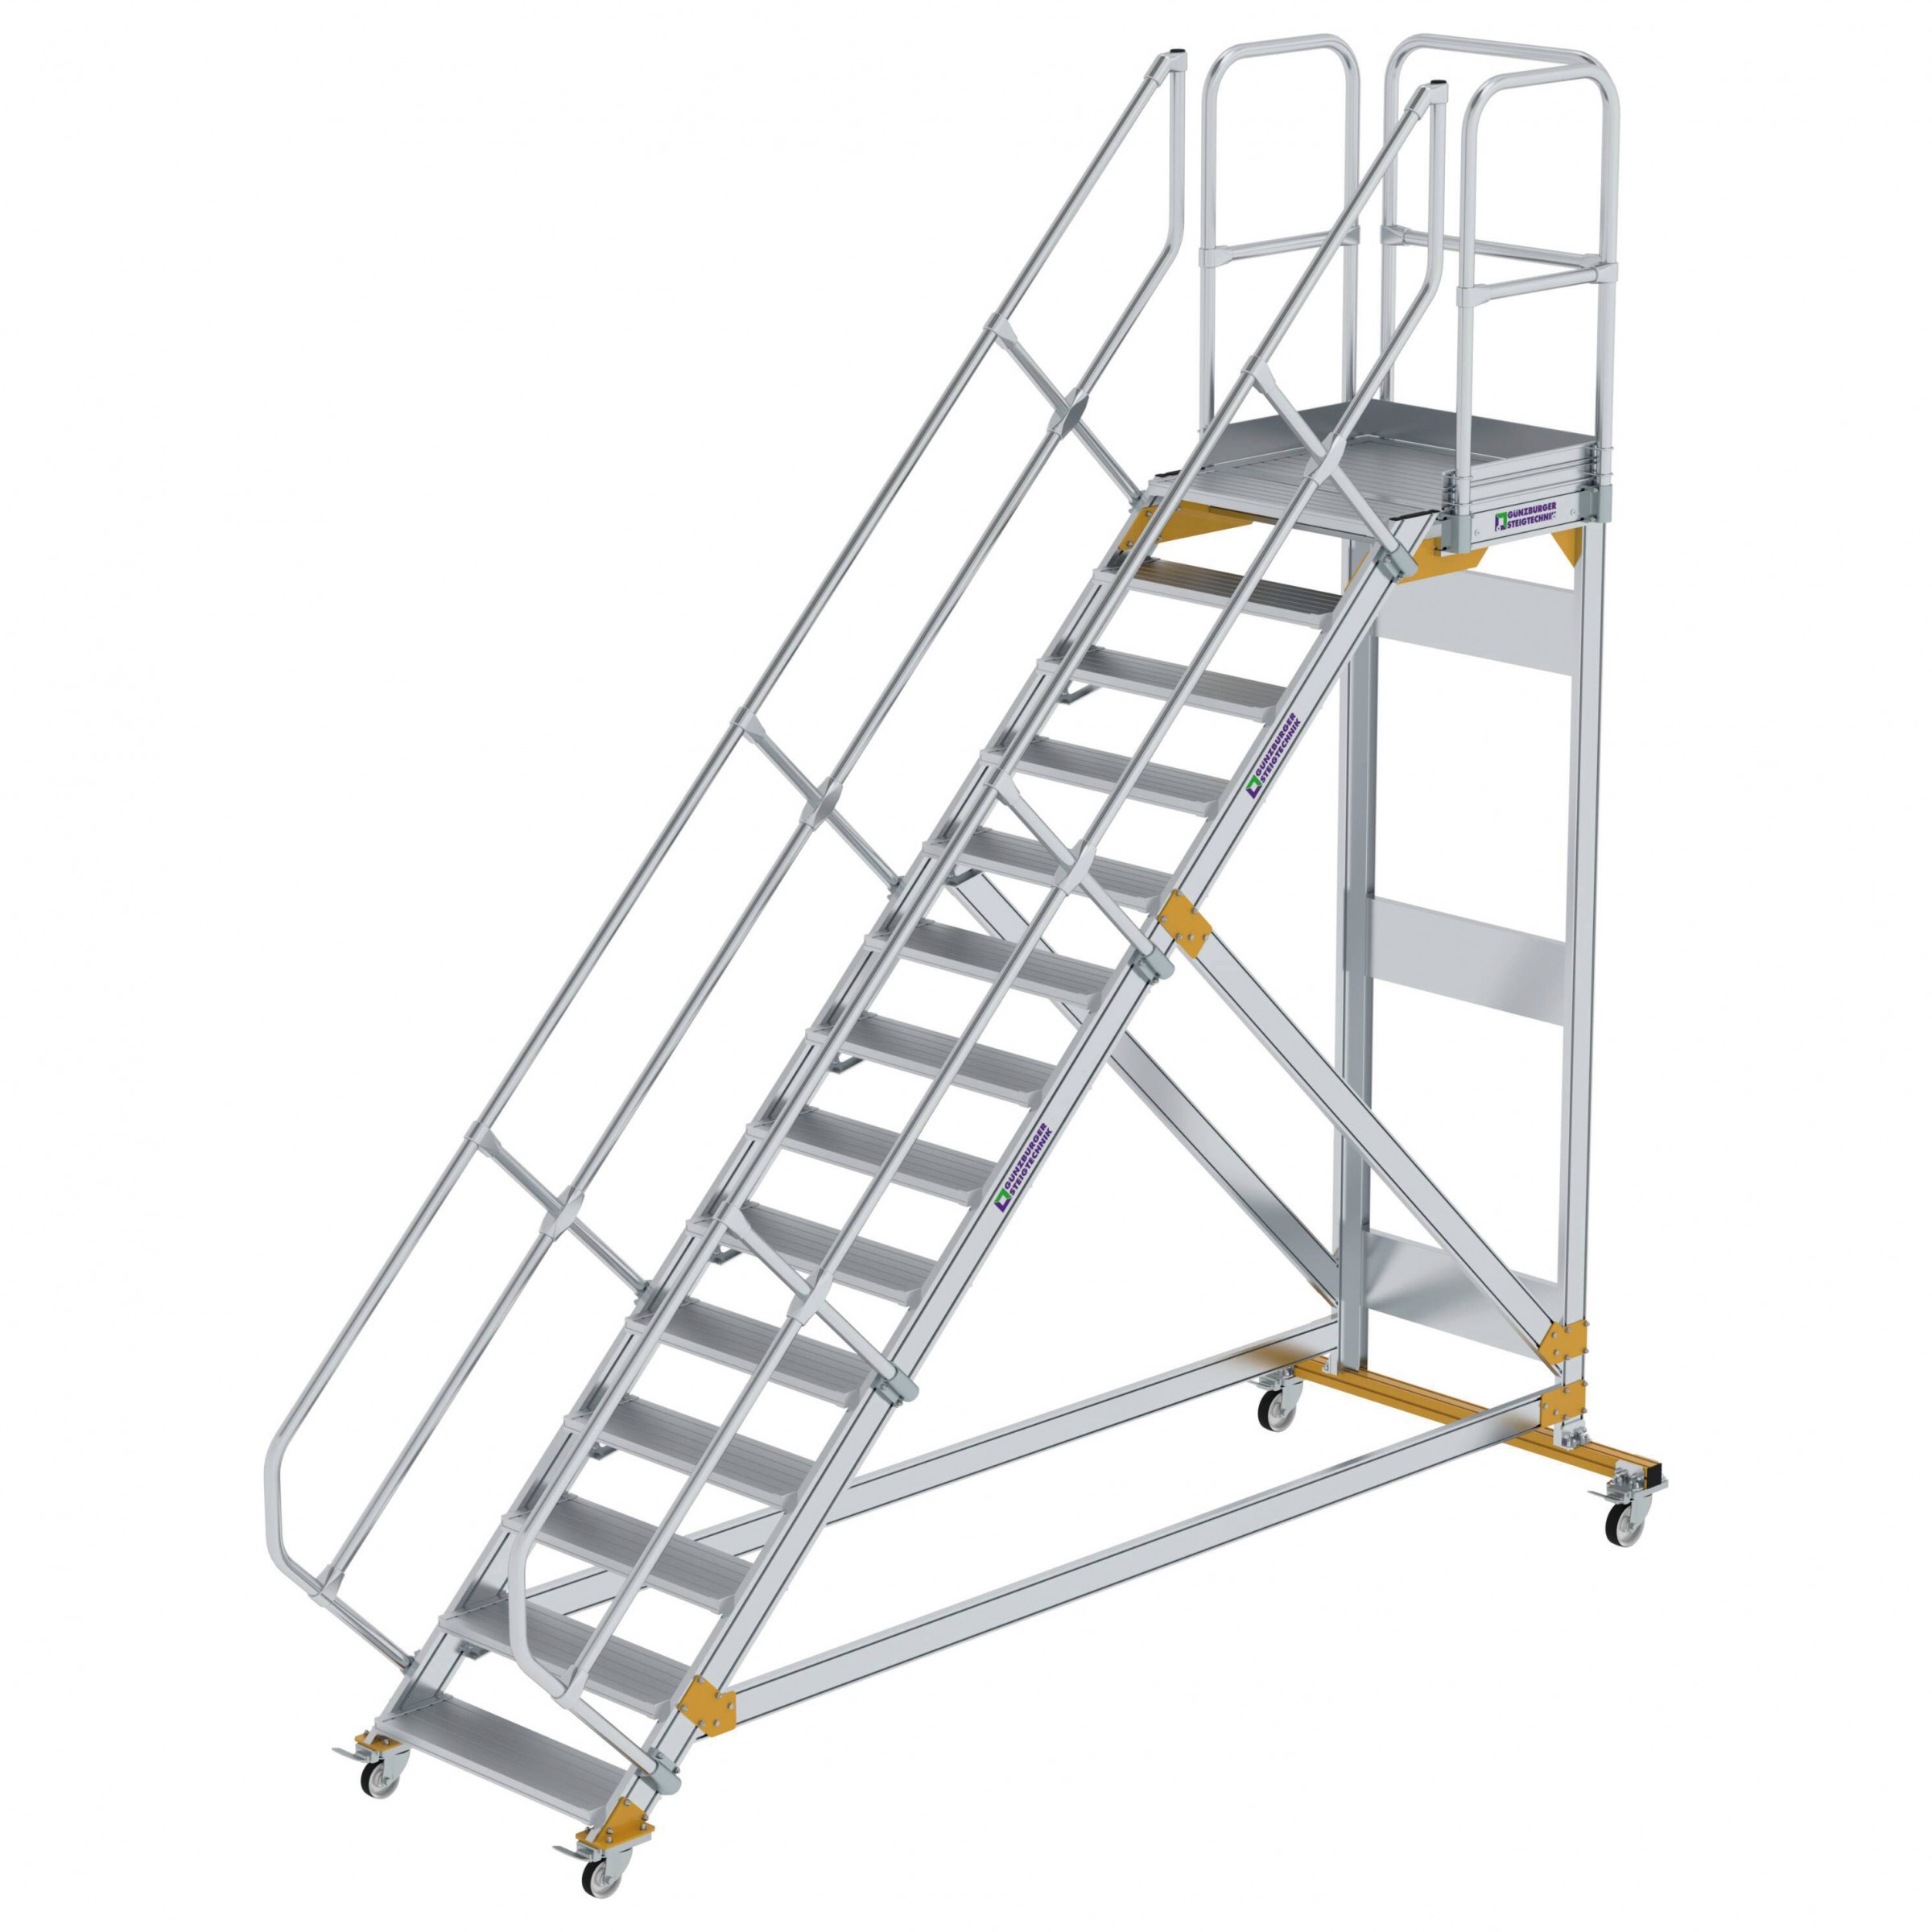 Aluminium-Plattform-Treppe fahrbar 45°, Stufenbreite 800 mm, 4 Stufen